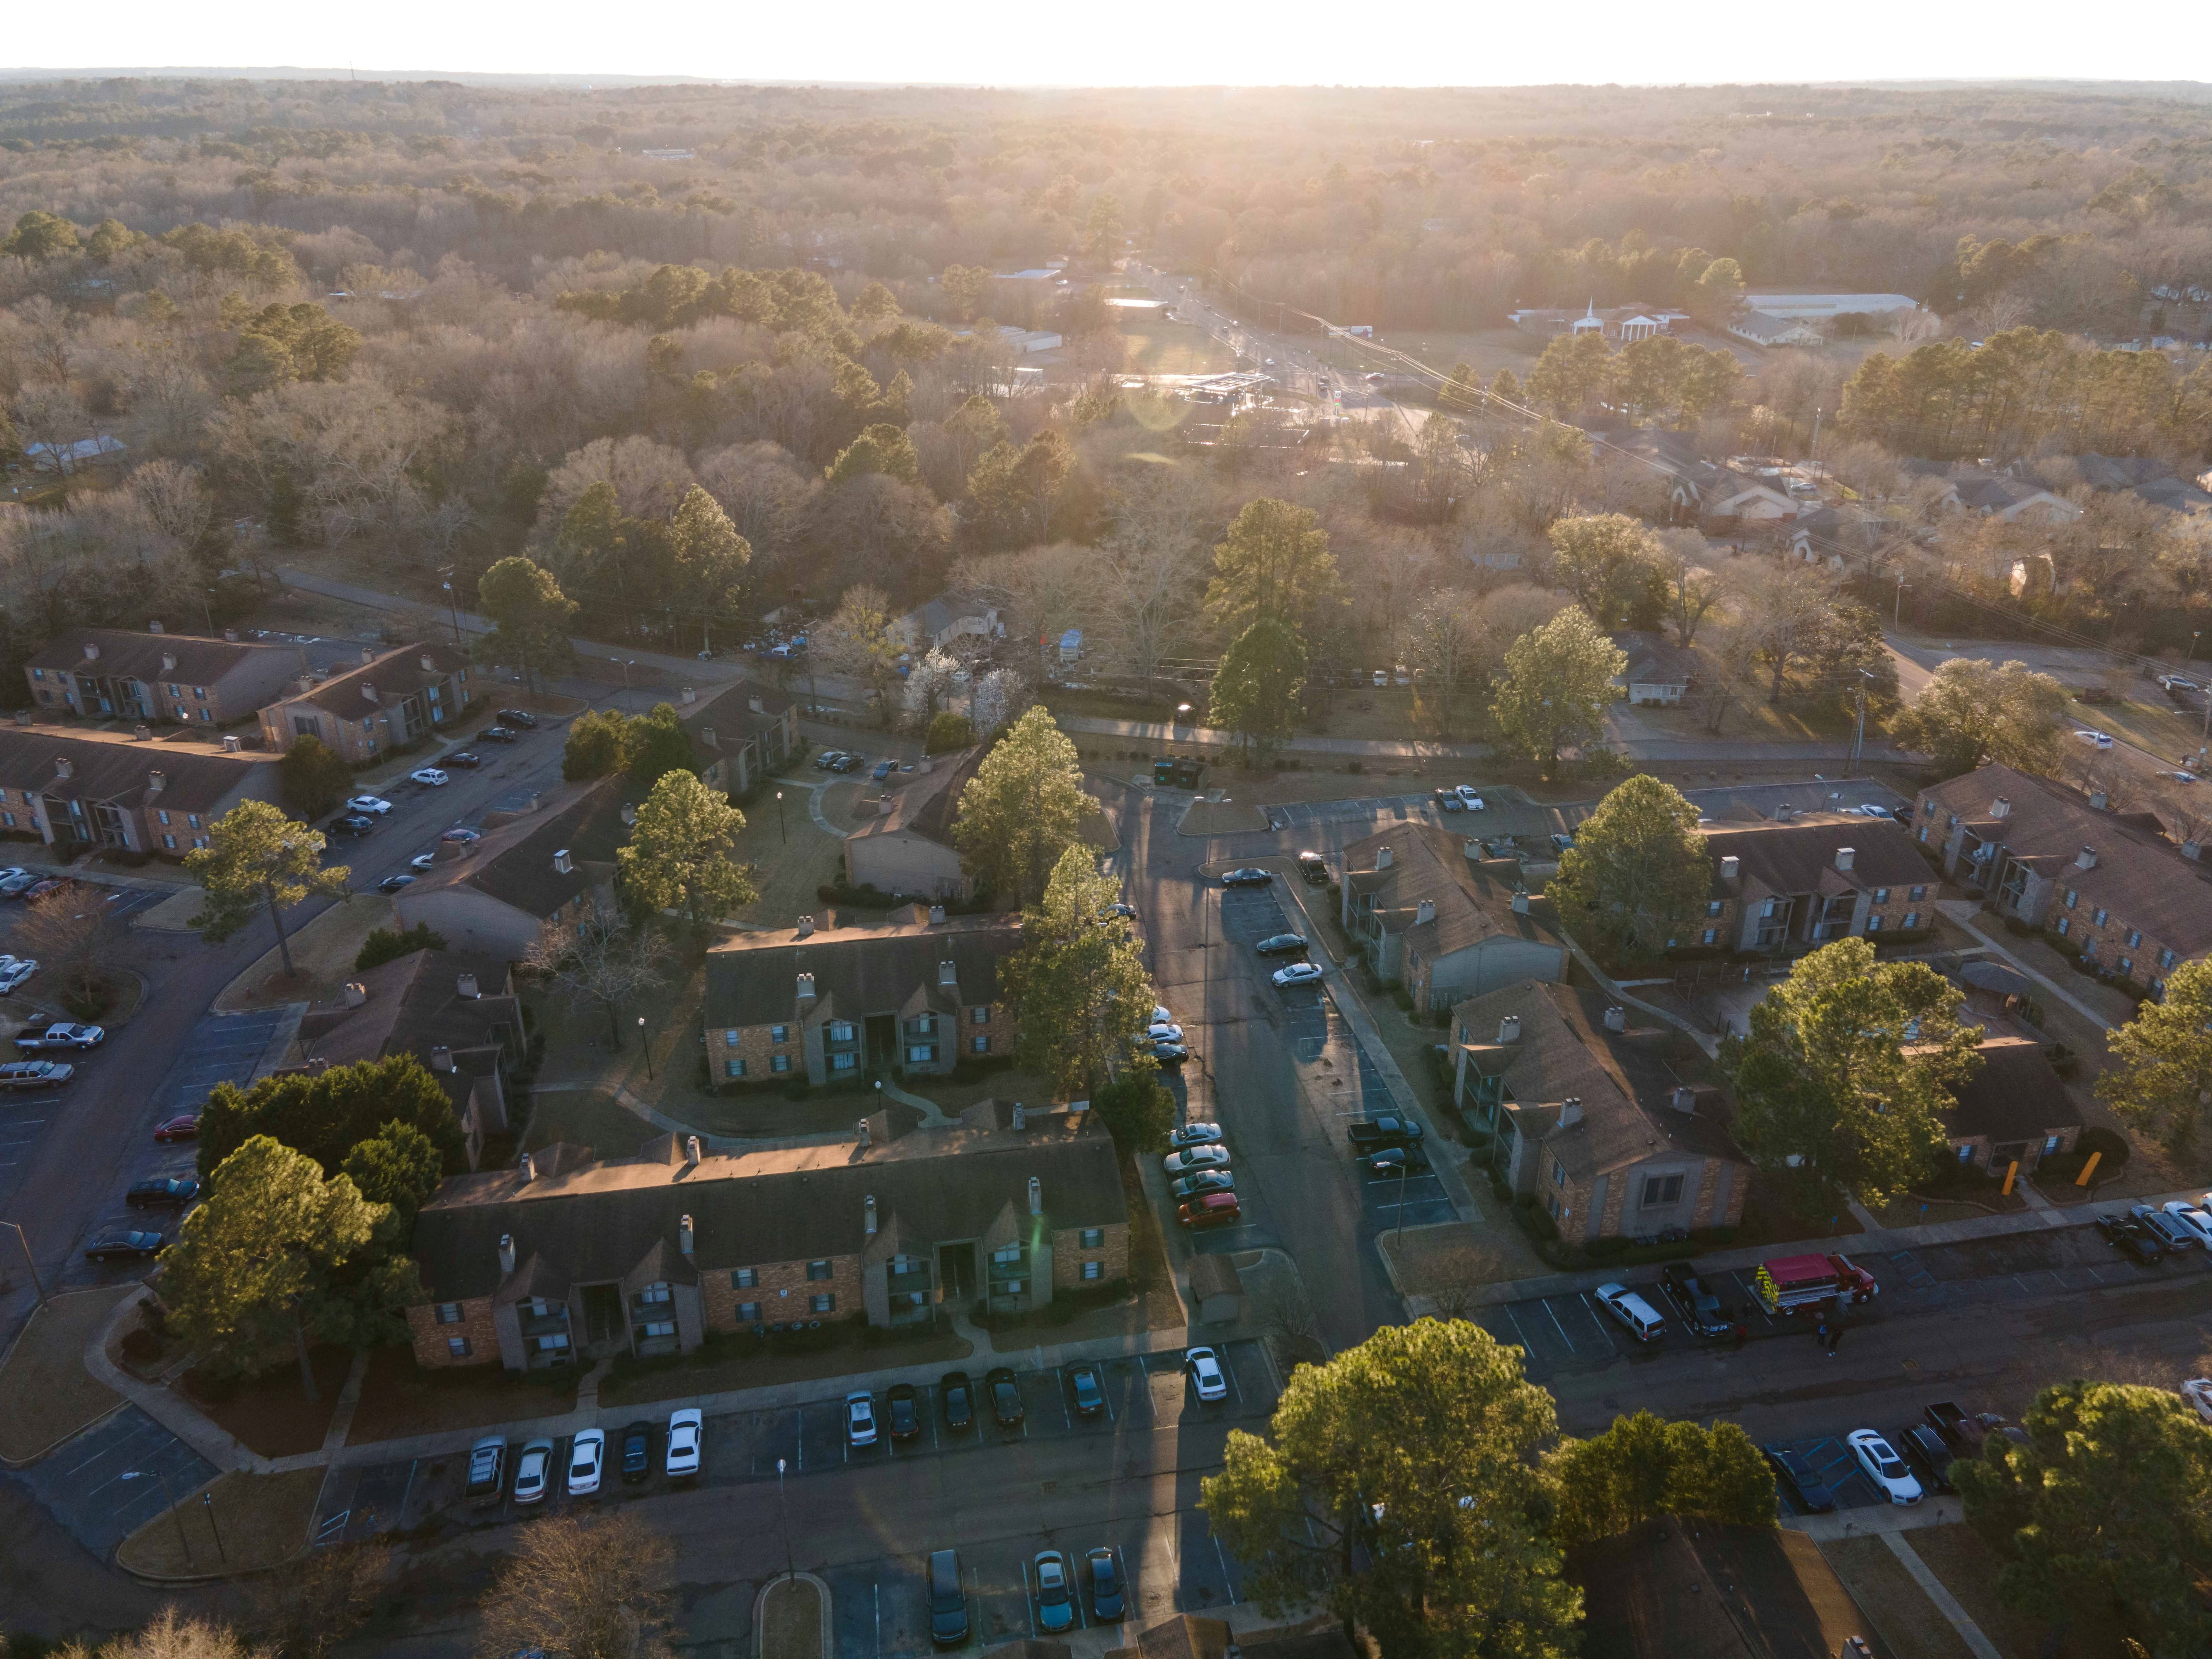 Allentown y Evansville registraron aumentos del 163.6% y 150%, respectivamente en el número de hogares con altos ingresos en Estados Unidos. (REUTERS/Rory Doyle)